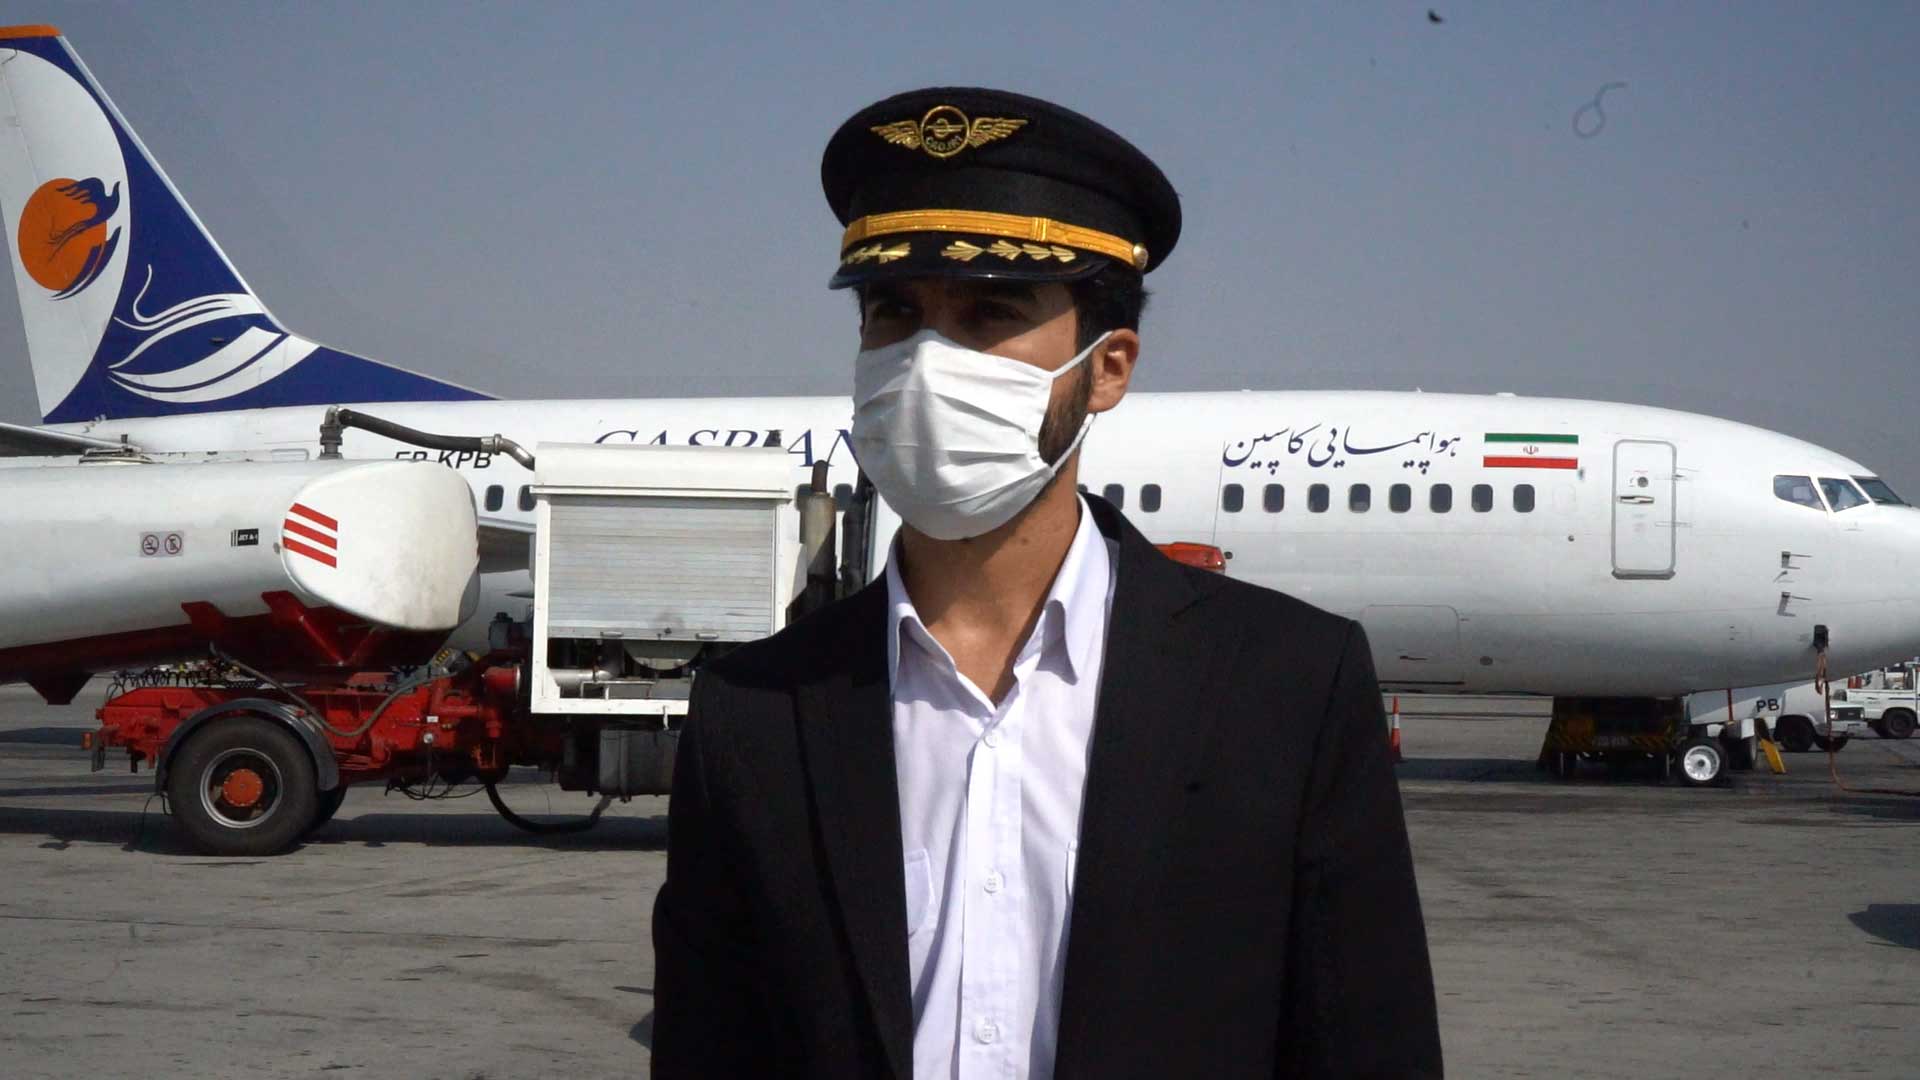 انتظار رسیدن |پشت صحنه ضبط تیزر در فرودگاه مهرآباد تهران